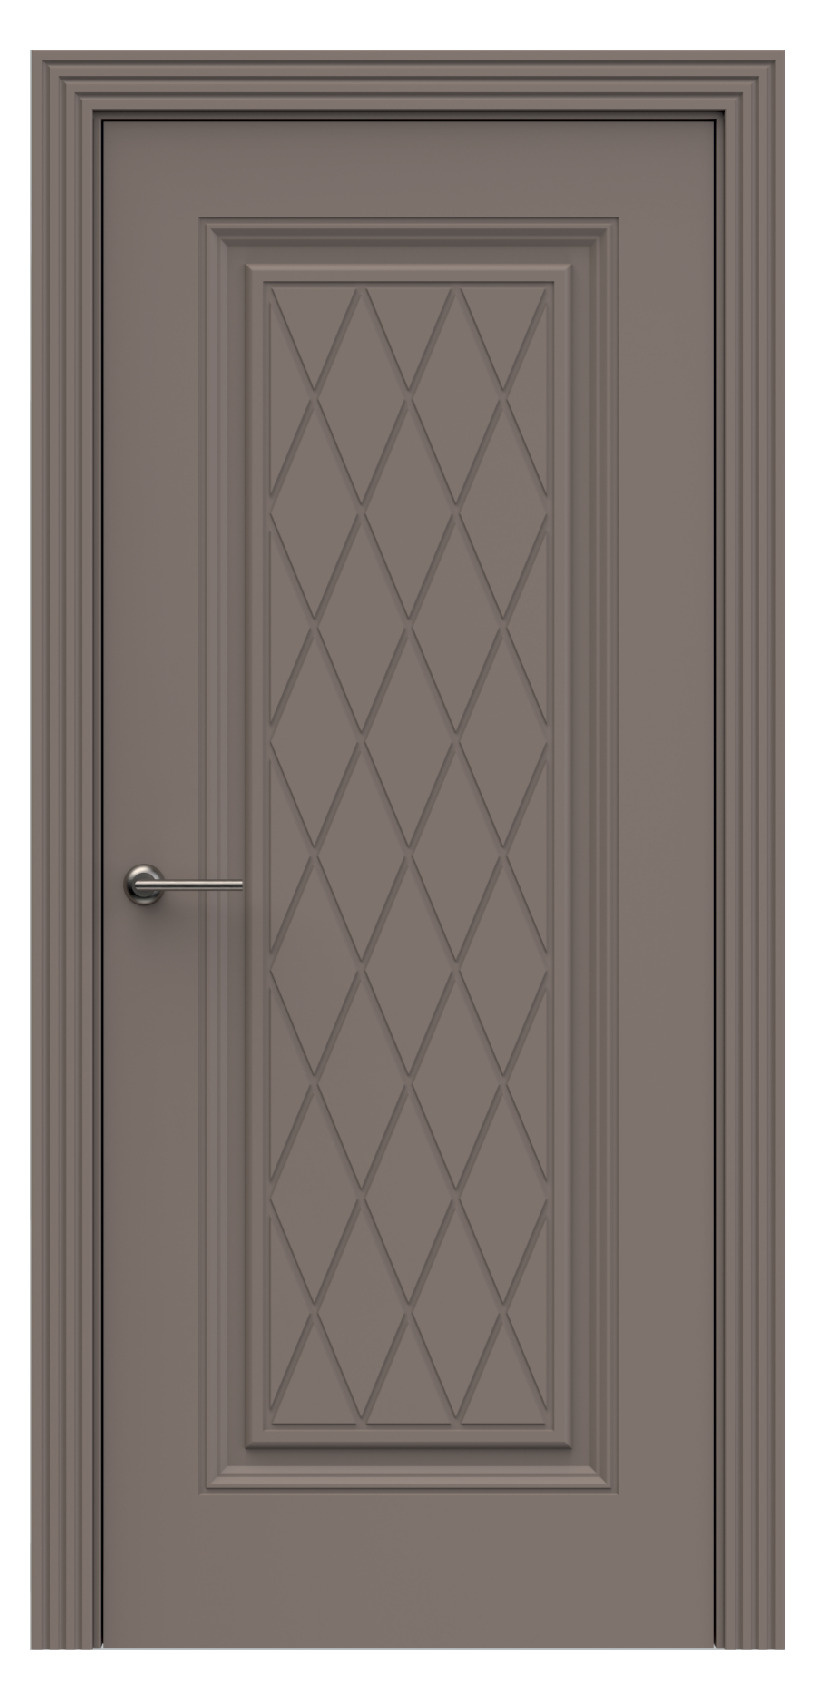 Questdoors Межкомнатная дверь QB9, арт. 17910 - фото №1